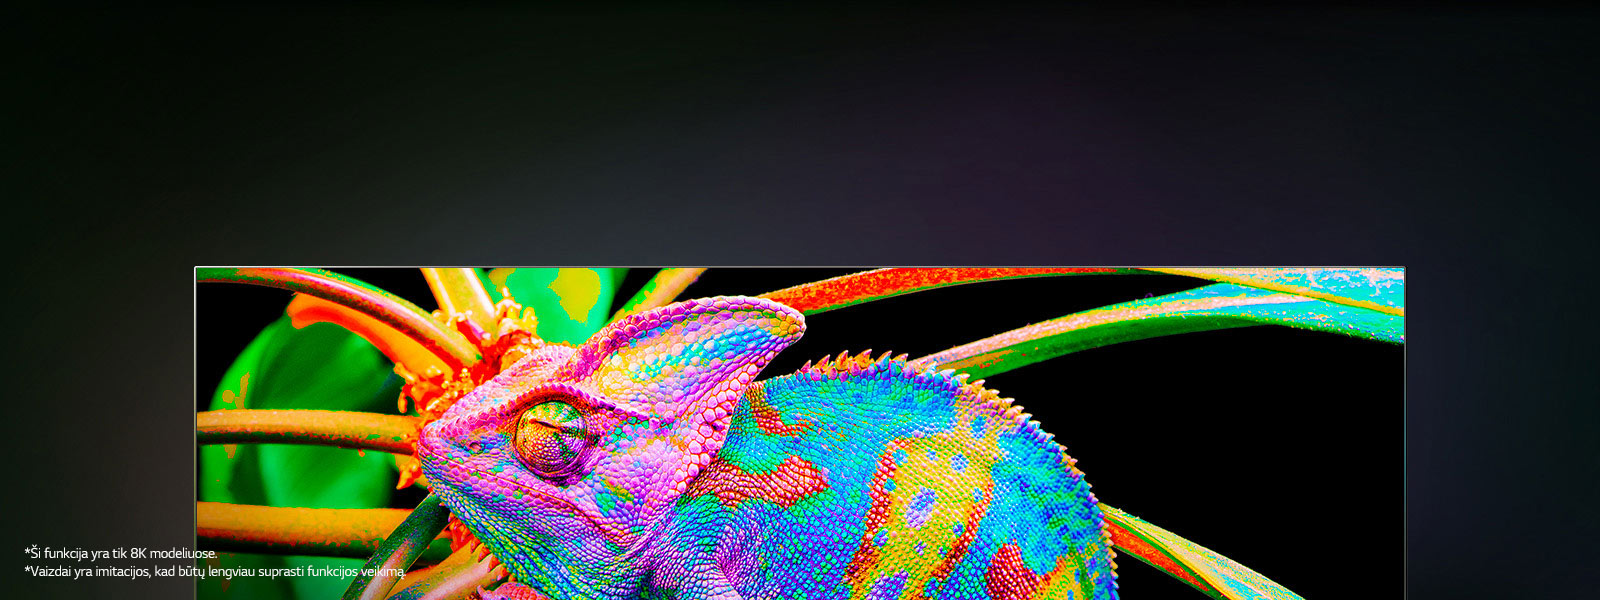 Televizorius, kuriame vaizduojami spalvingi chameleonai, priartintas, kad matytųsi odos detalumas.